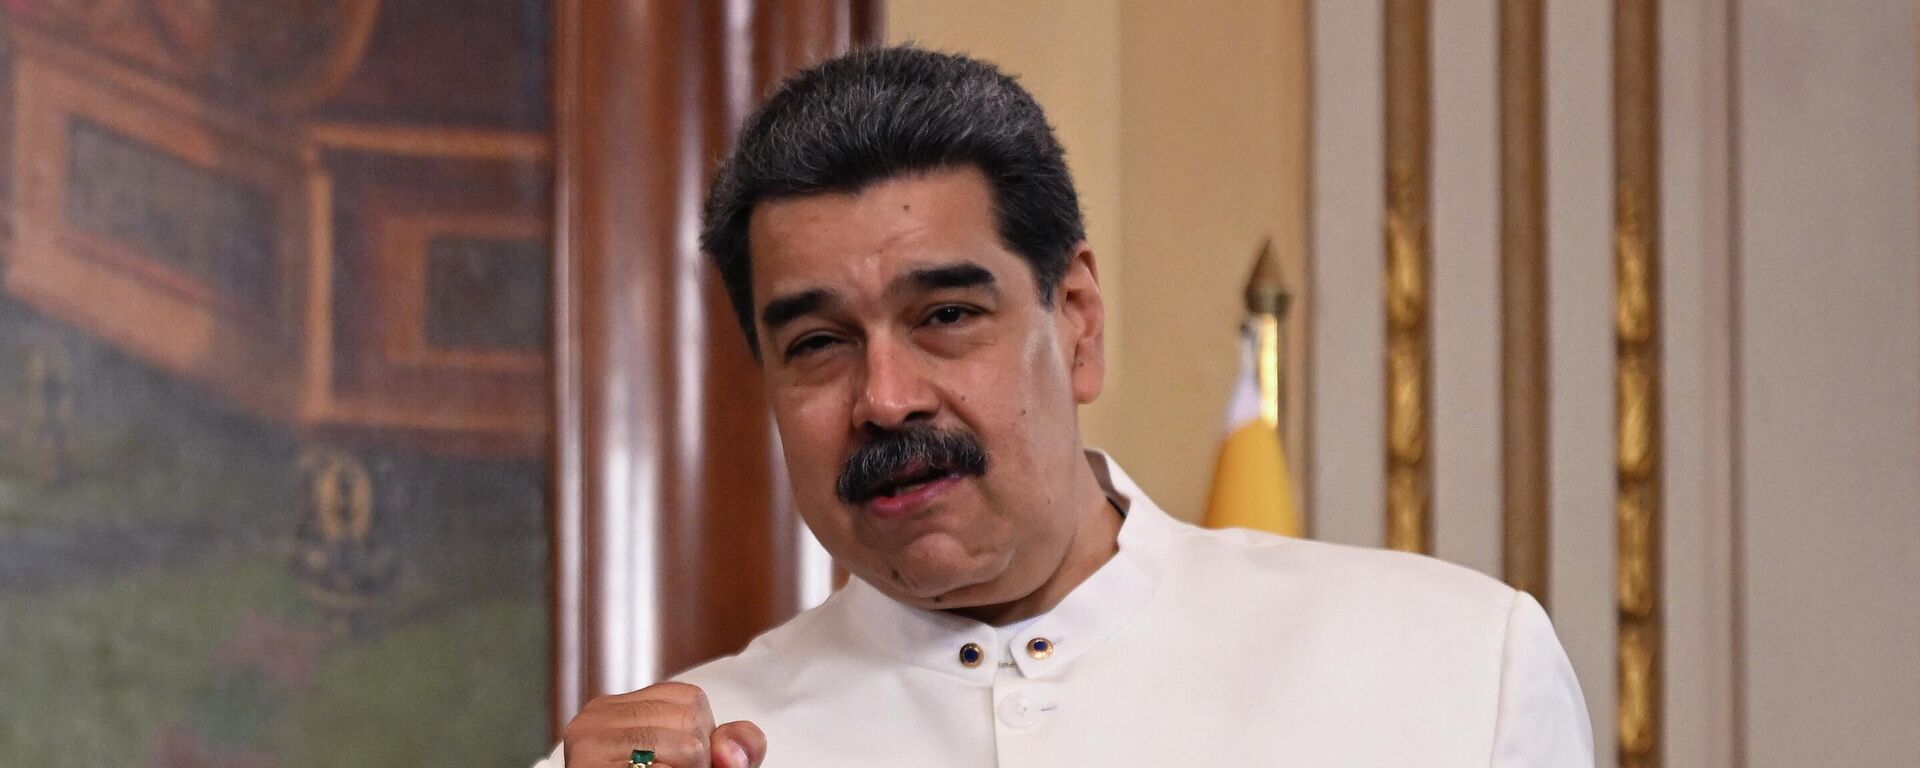 Nicolás Maduro, el presidente de Venezuela - Sputnik Mundo, 1920, 29.09.2022